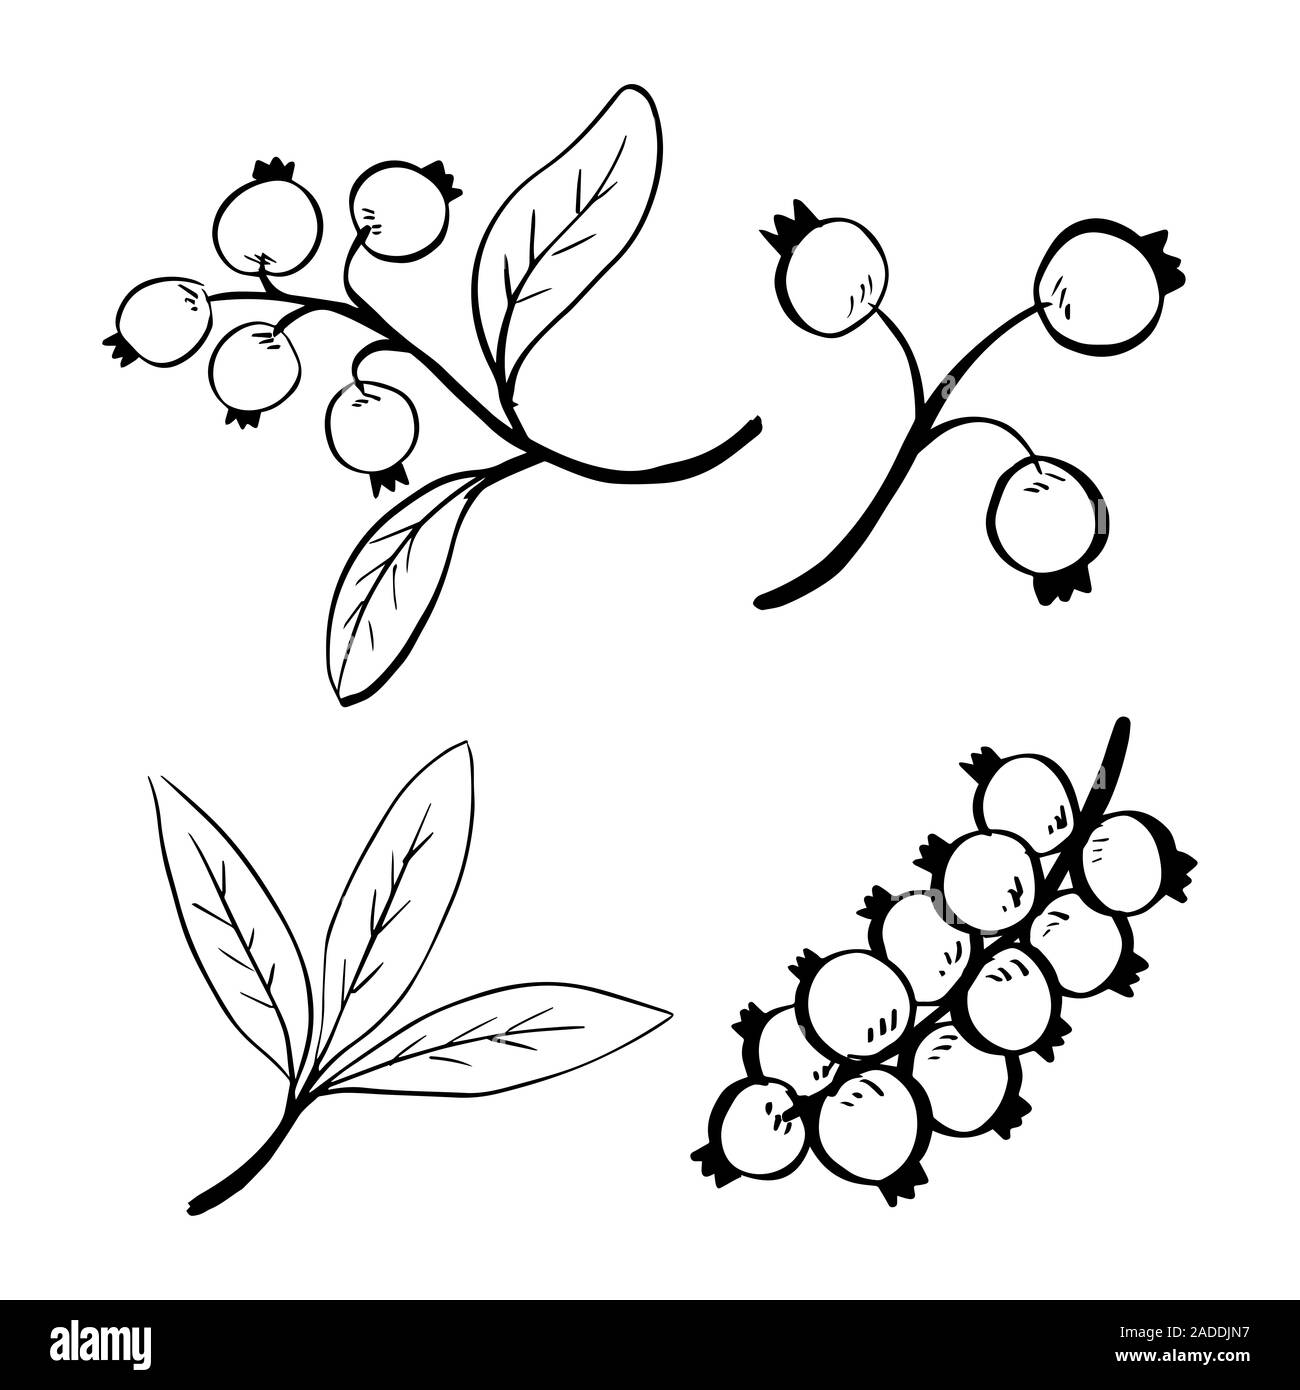 Doodle jeu de feuilles et de baies isolées sur fond blanc pour Noël - hand drawn vector illustration. Banque D'Images